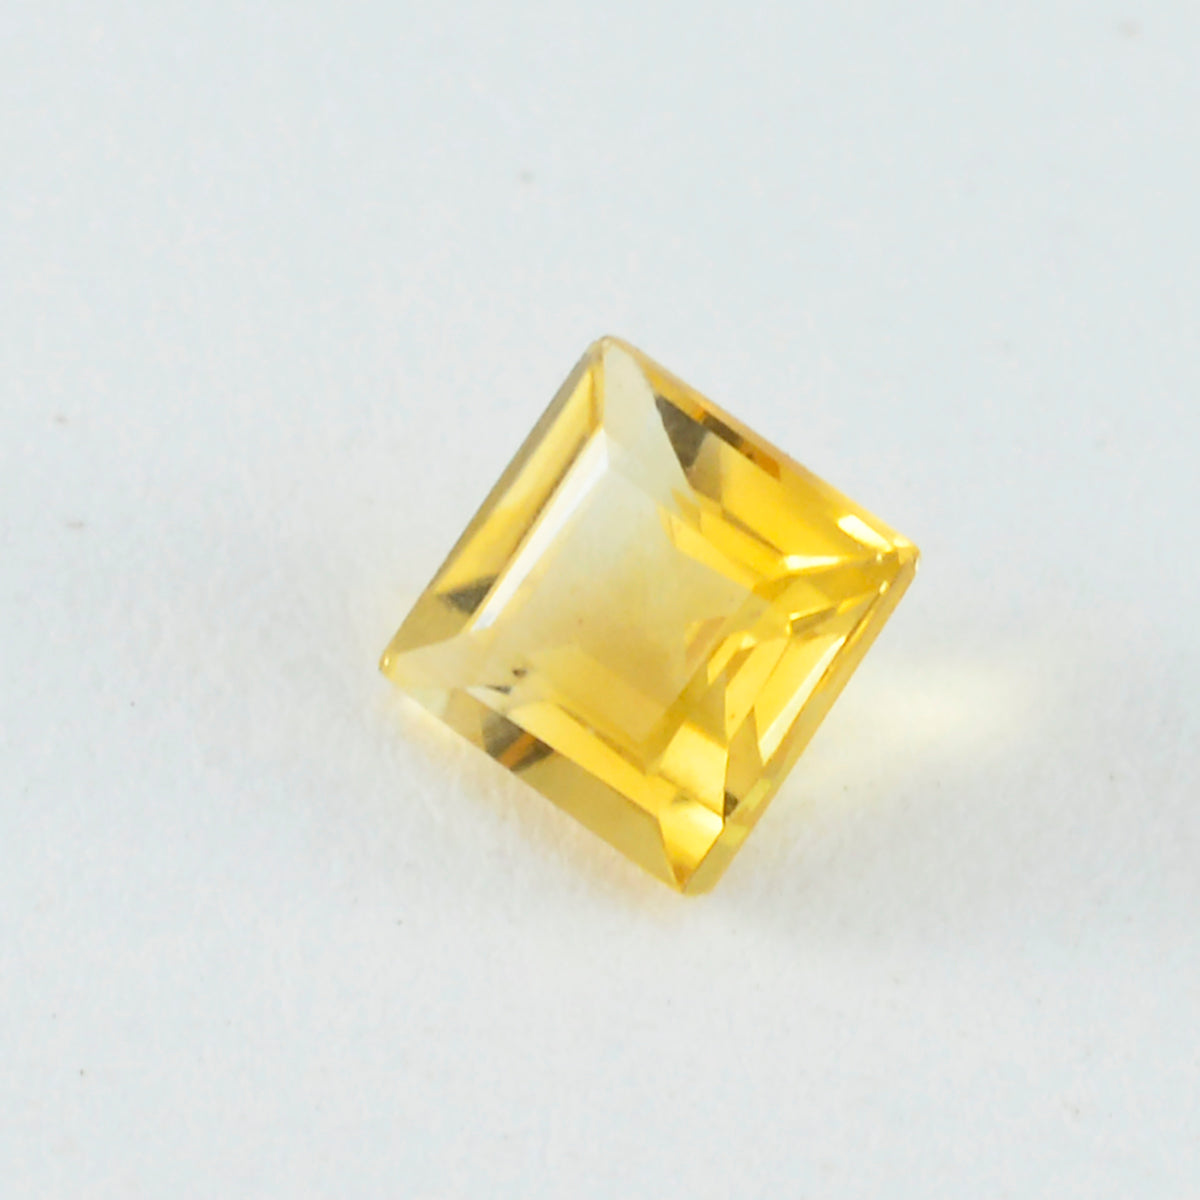 Riyogems 1 pièce véritable citrine jaune à facettes 11x11mm forme carrée gemme d'excellente qualité